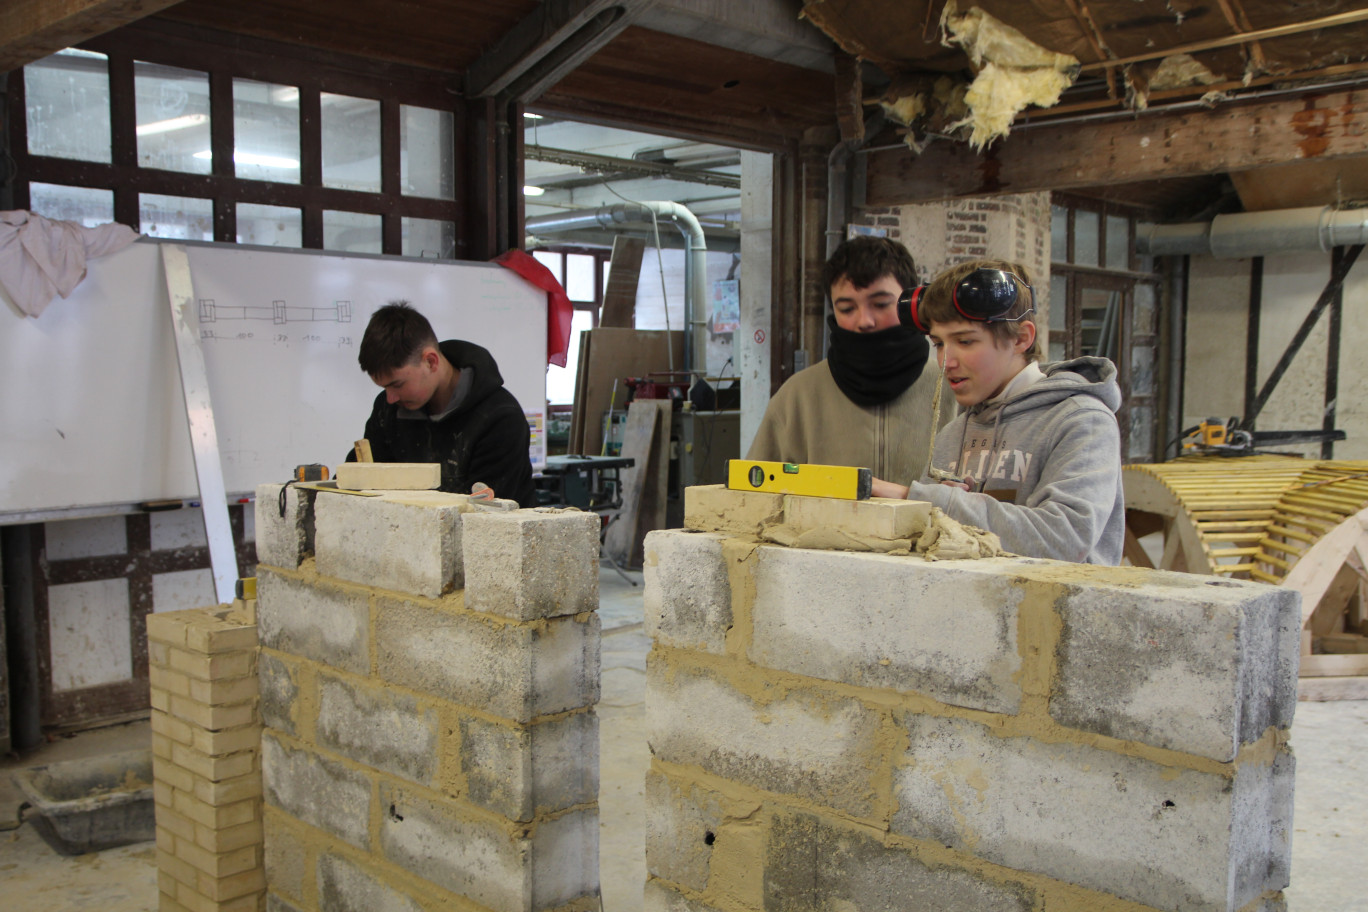 Démonstration de maçonnerie dans les ateliers de Mont-Saint-Aignan. (© Aletheia Press / B.Delabre)